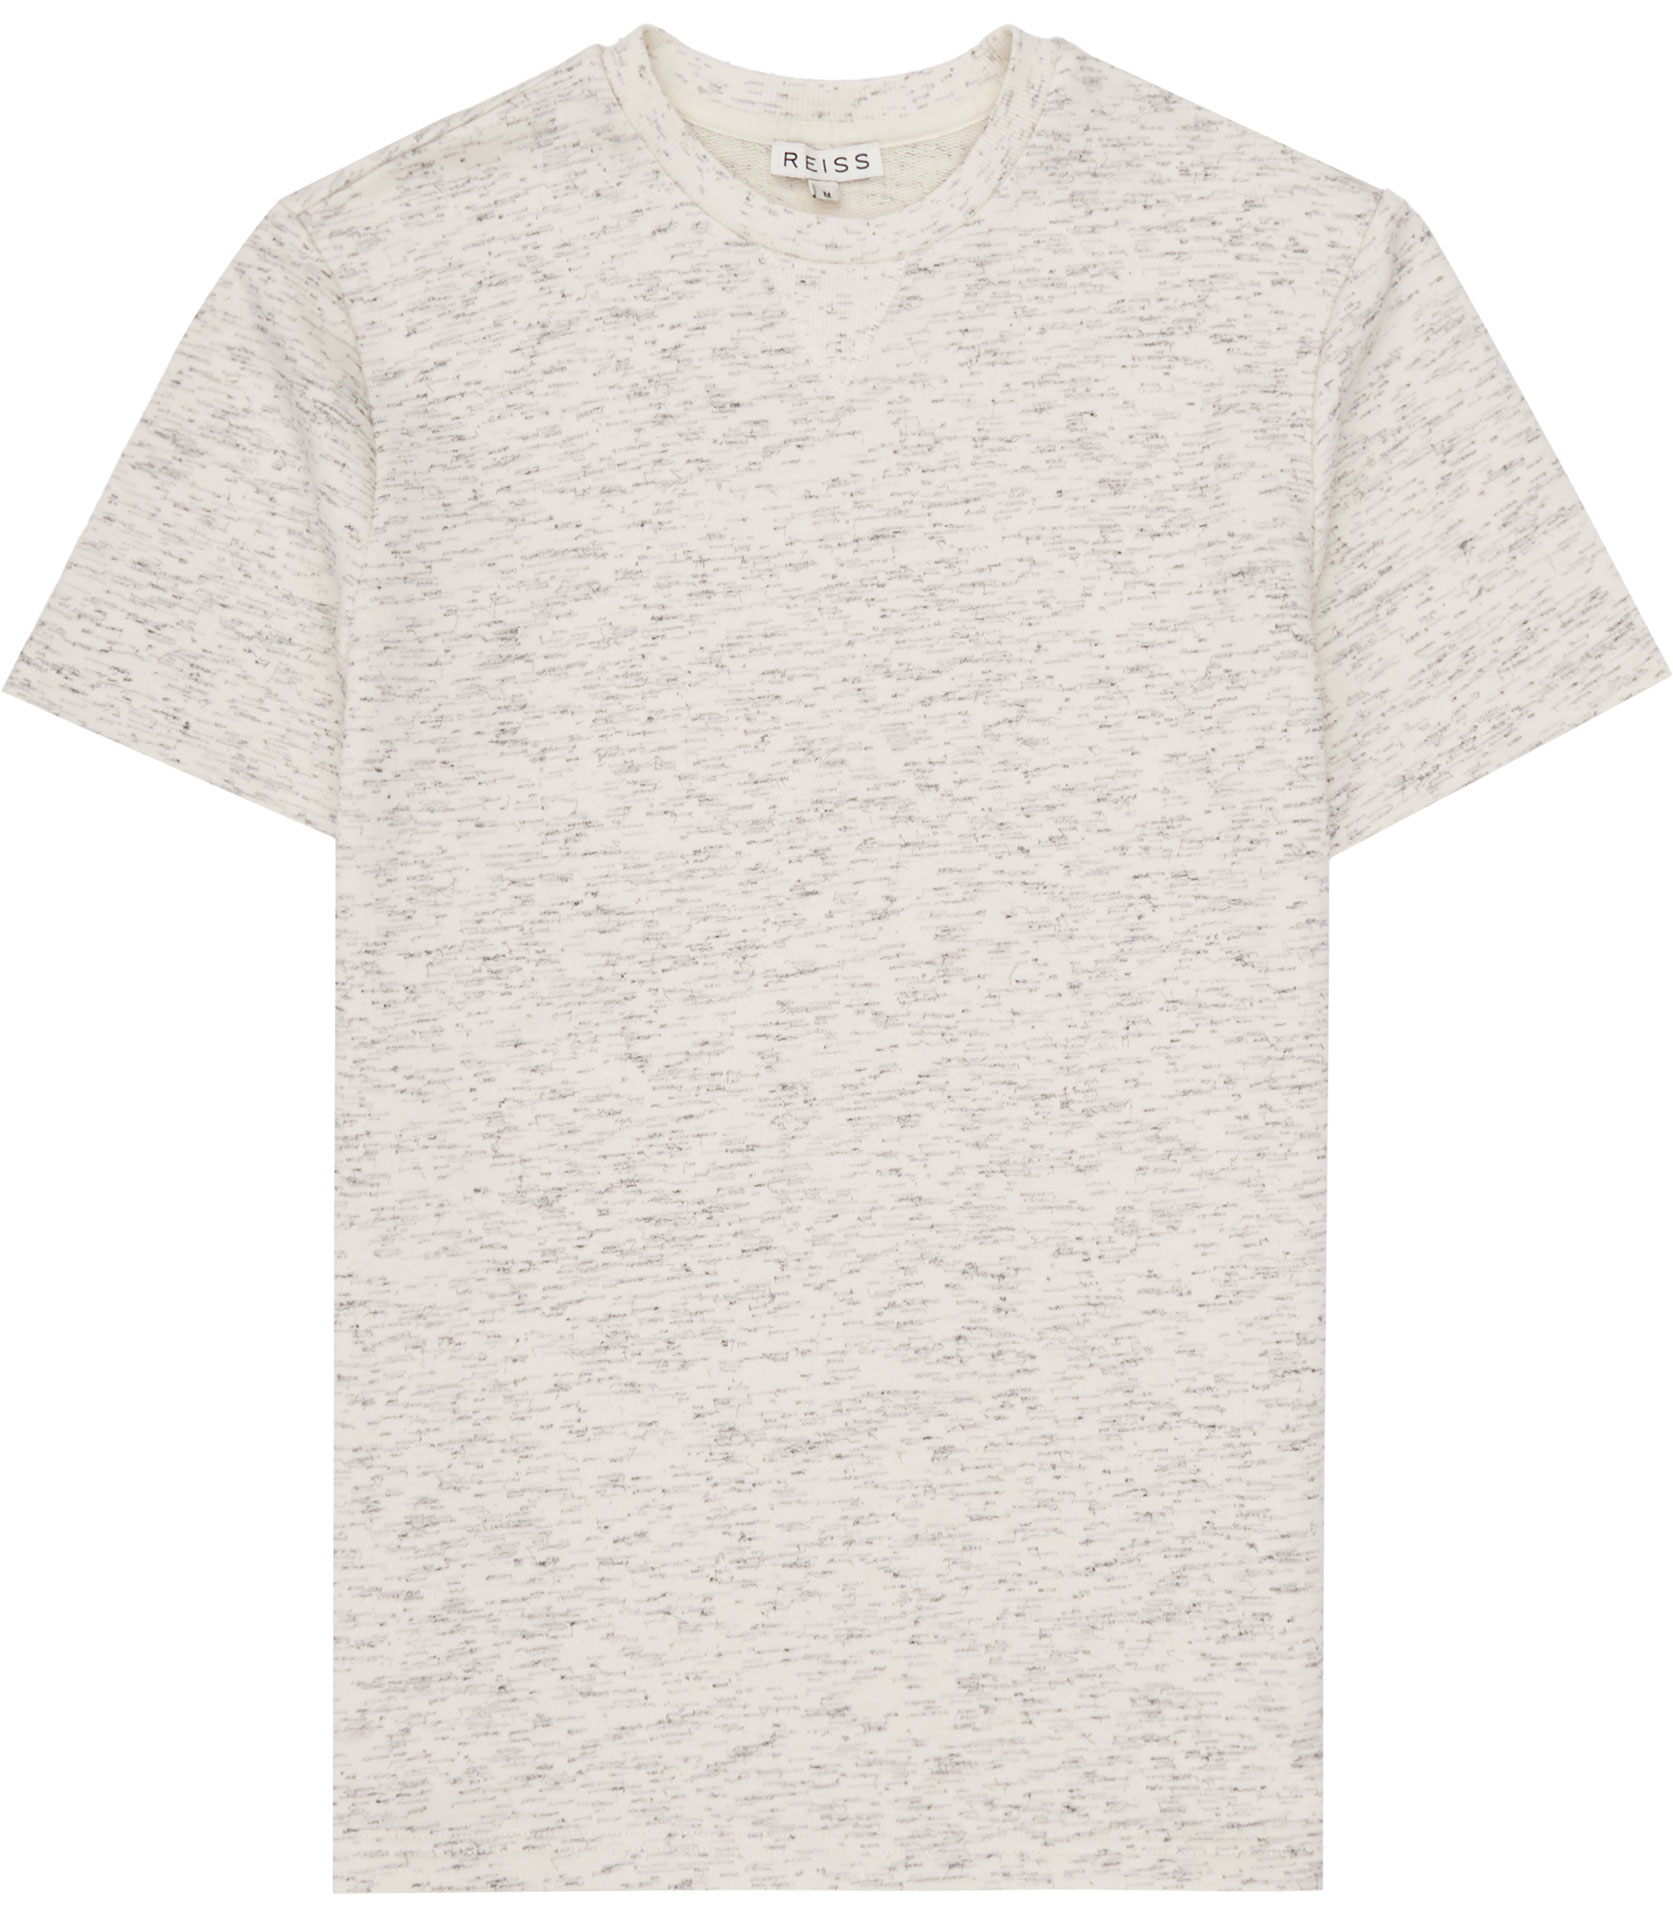 Reiss Cotton Wheeler Flecked T-shirt in Ecru (Natural) for Men - Lyst